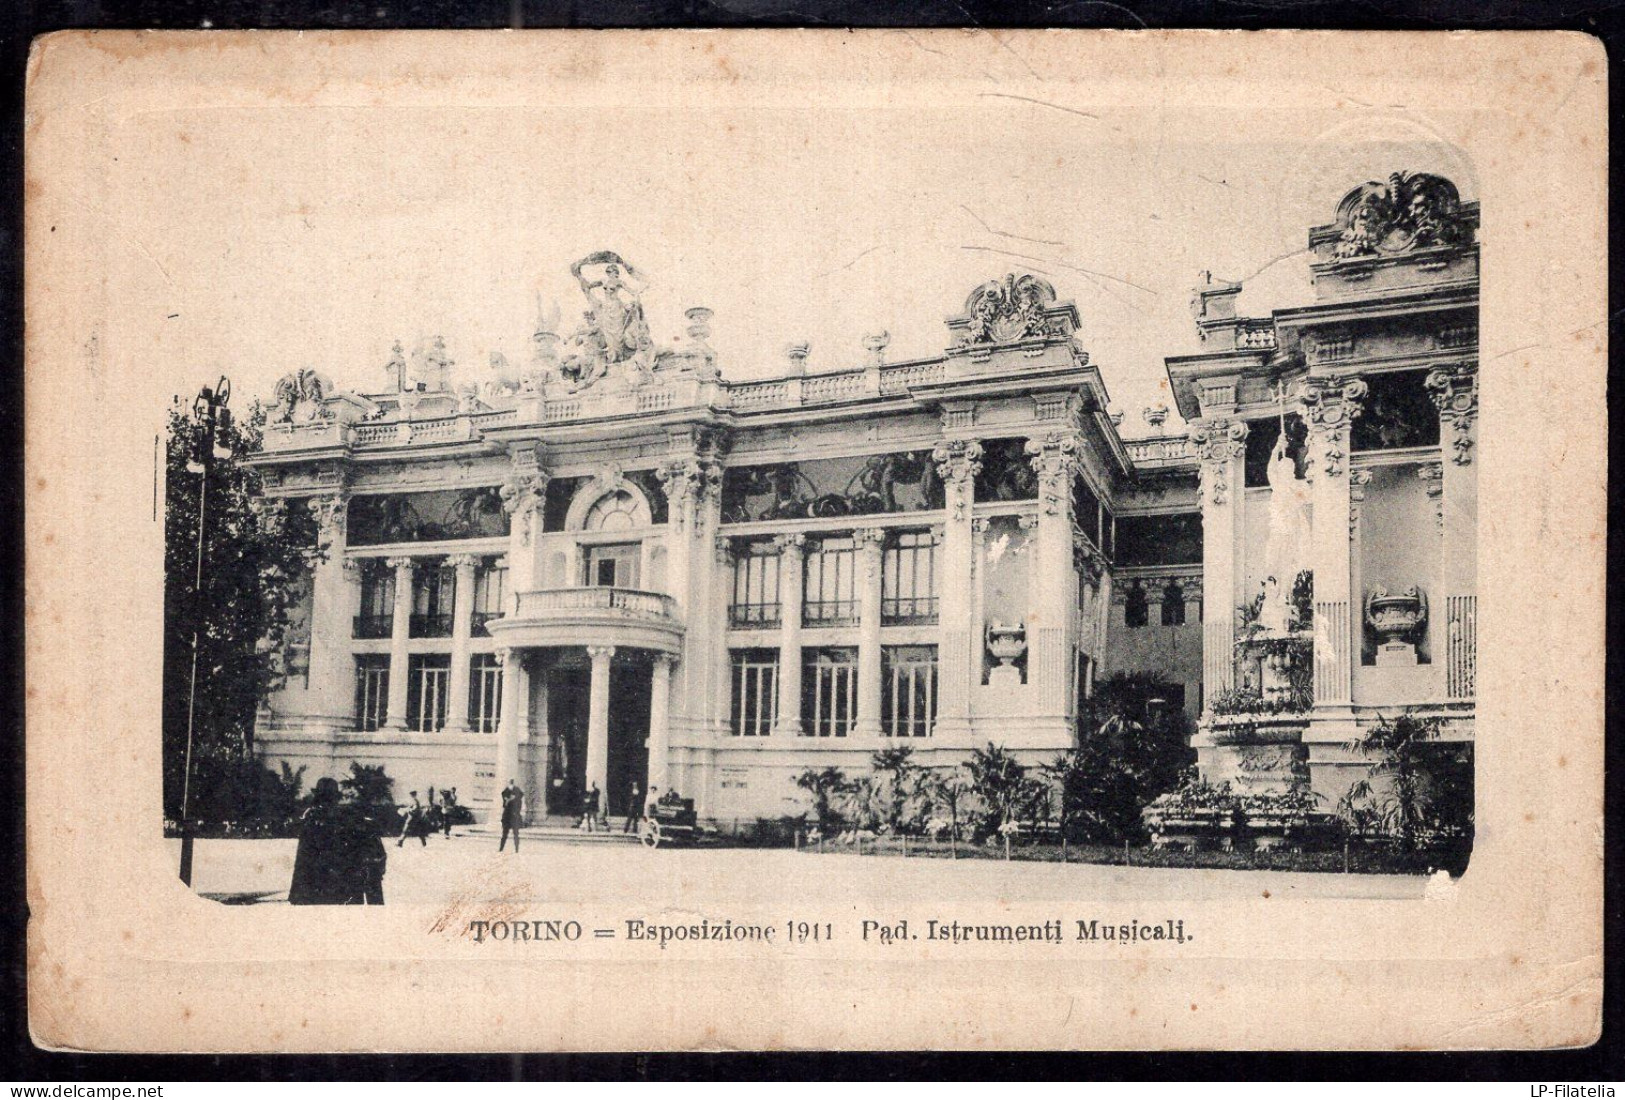 Italy - 1915 - Torino - Exposizione 1911 - Mostre, Esposizioni